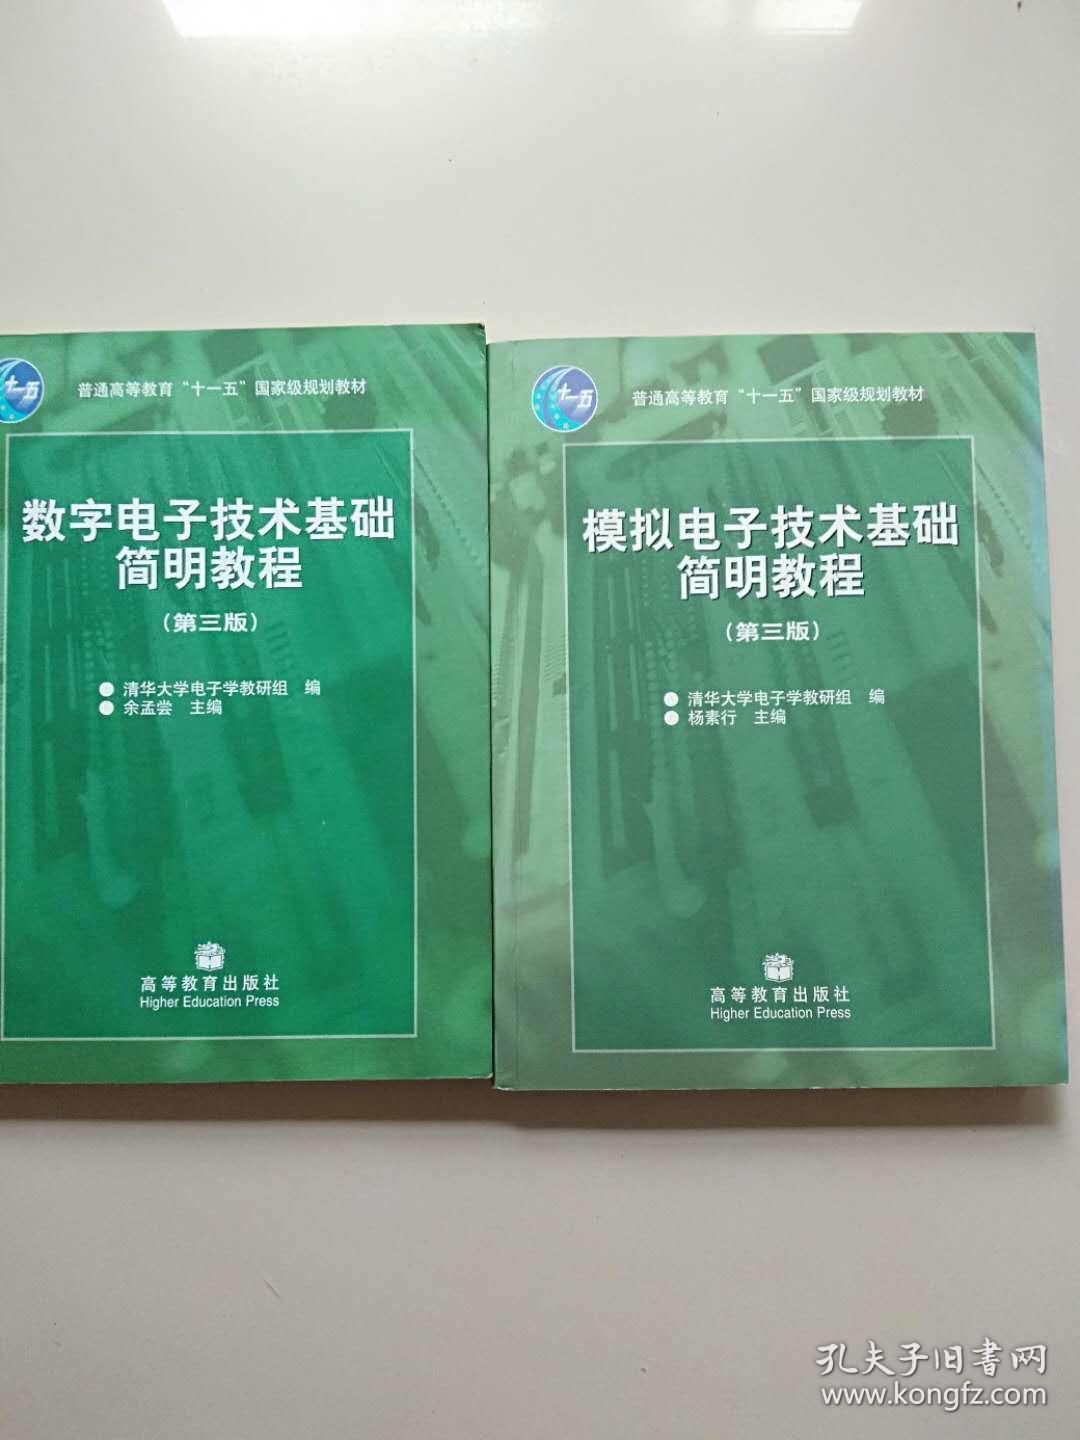 模拟电子技术基础简明教程 数字电子技术基础简明教程 第三版